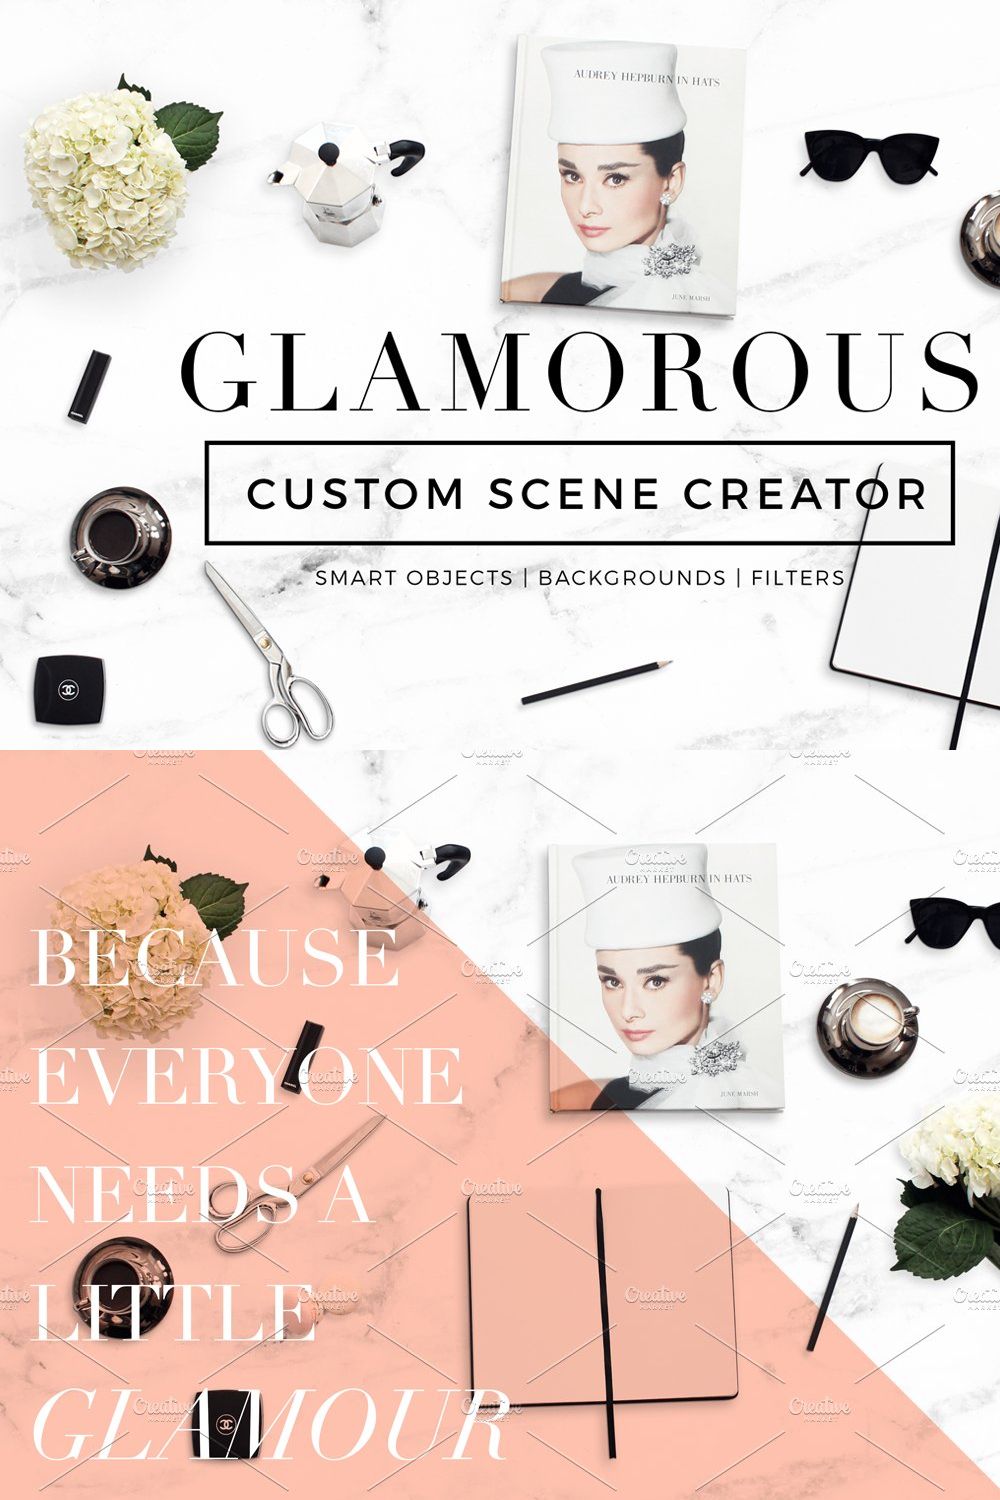 Custom Scene Creator- Glamorous pinterest preview image.